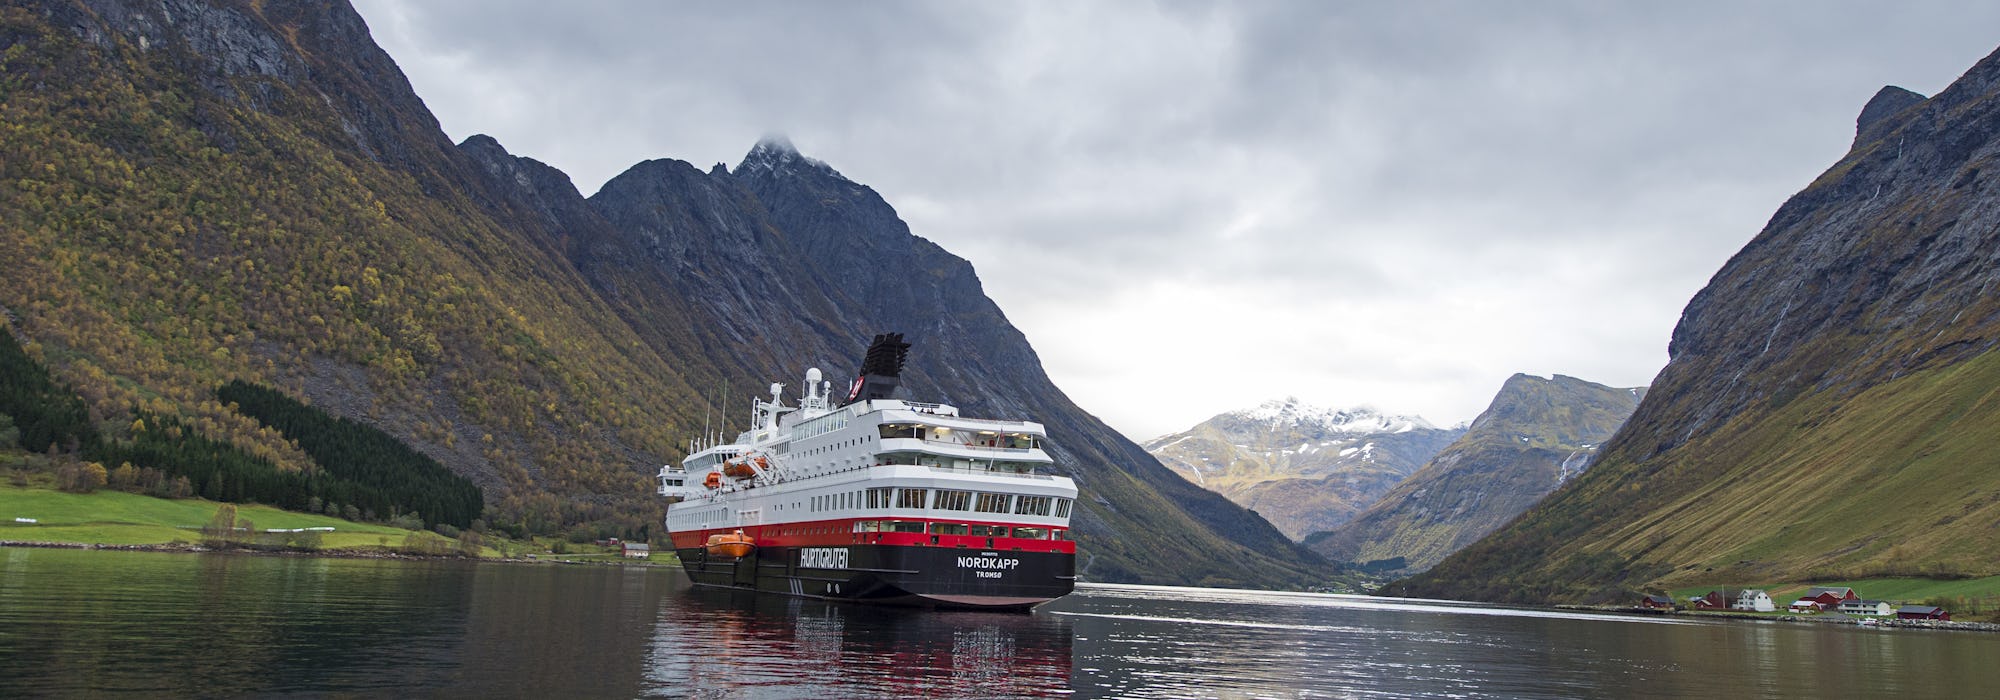 MS Nordkapp glider stilla genom de Norska fjordarna och dess vackra natur med berg runtomkring.